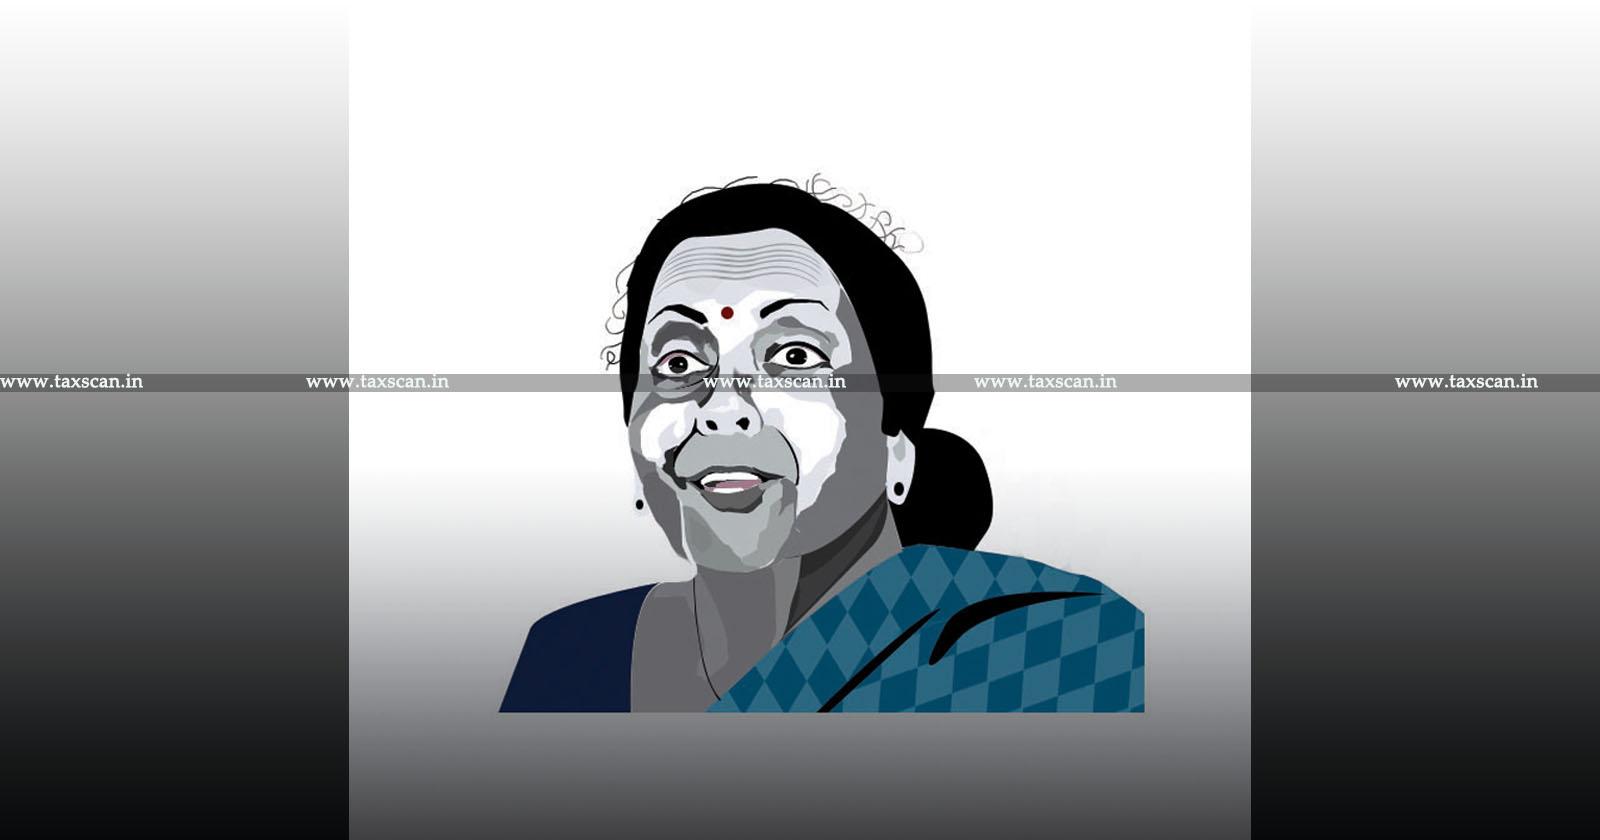 FM Nirmala Sitharaman - Finance Minster - GST Seva Kendras in Vapi - Distributes Mera Bill Mera Adhikaar Prizes - Mera Bill Mera Adhikaar Prizes - Mera Bill Mera Adhikaar - TAXSCAN